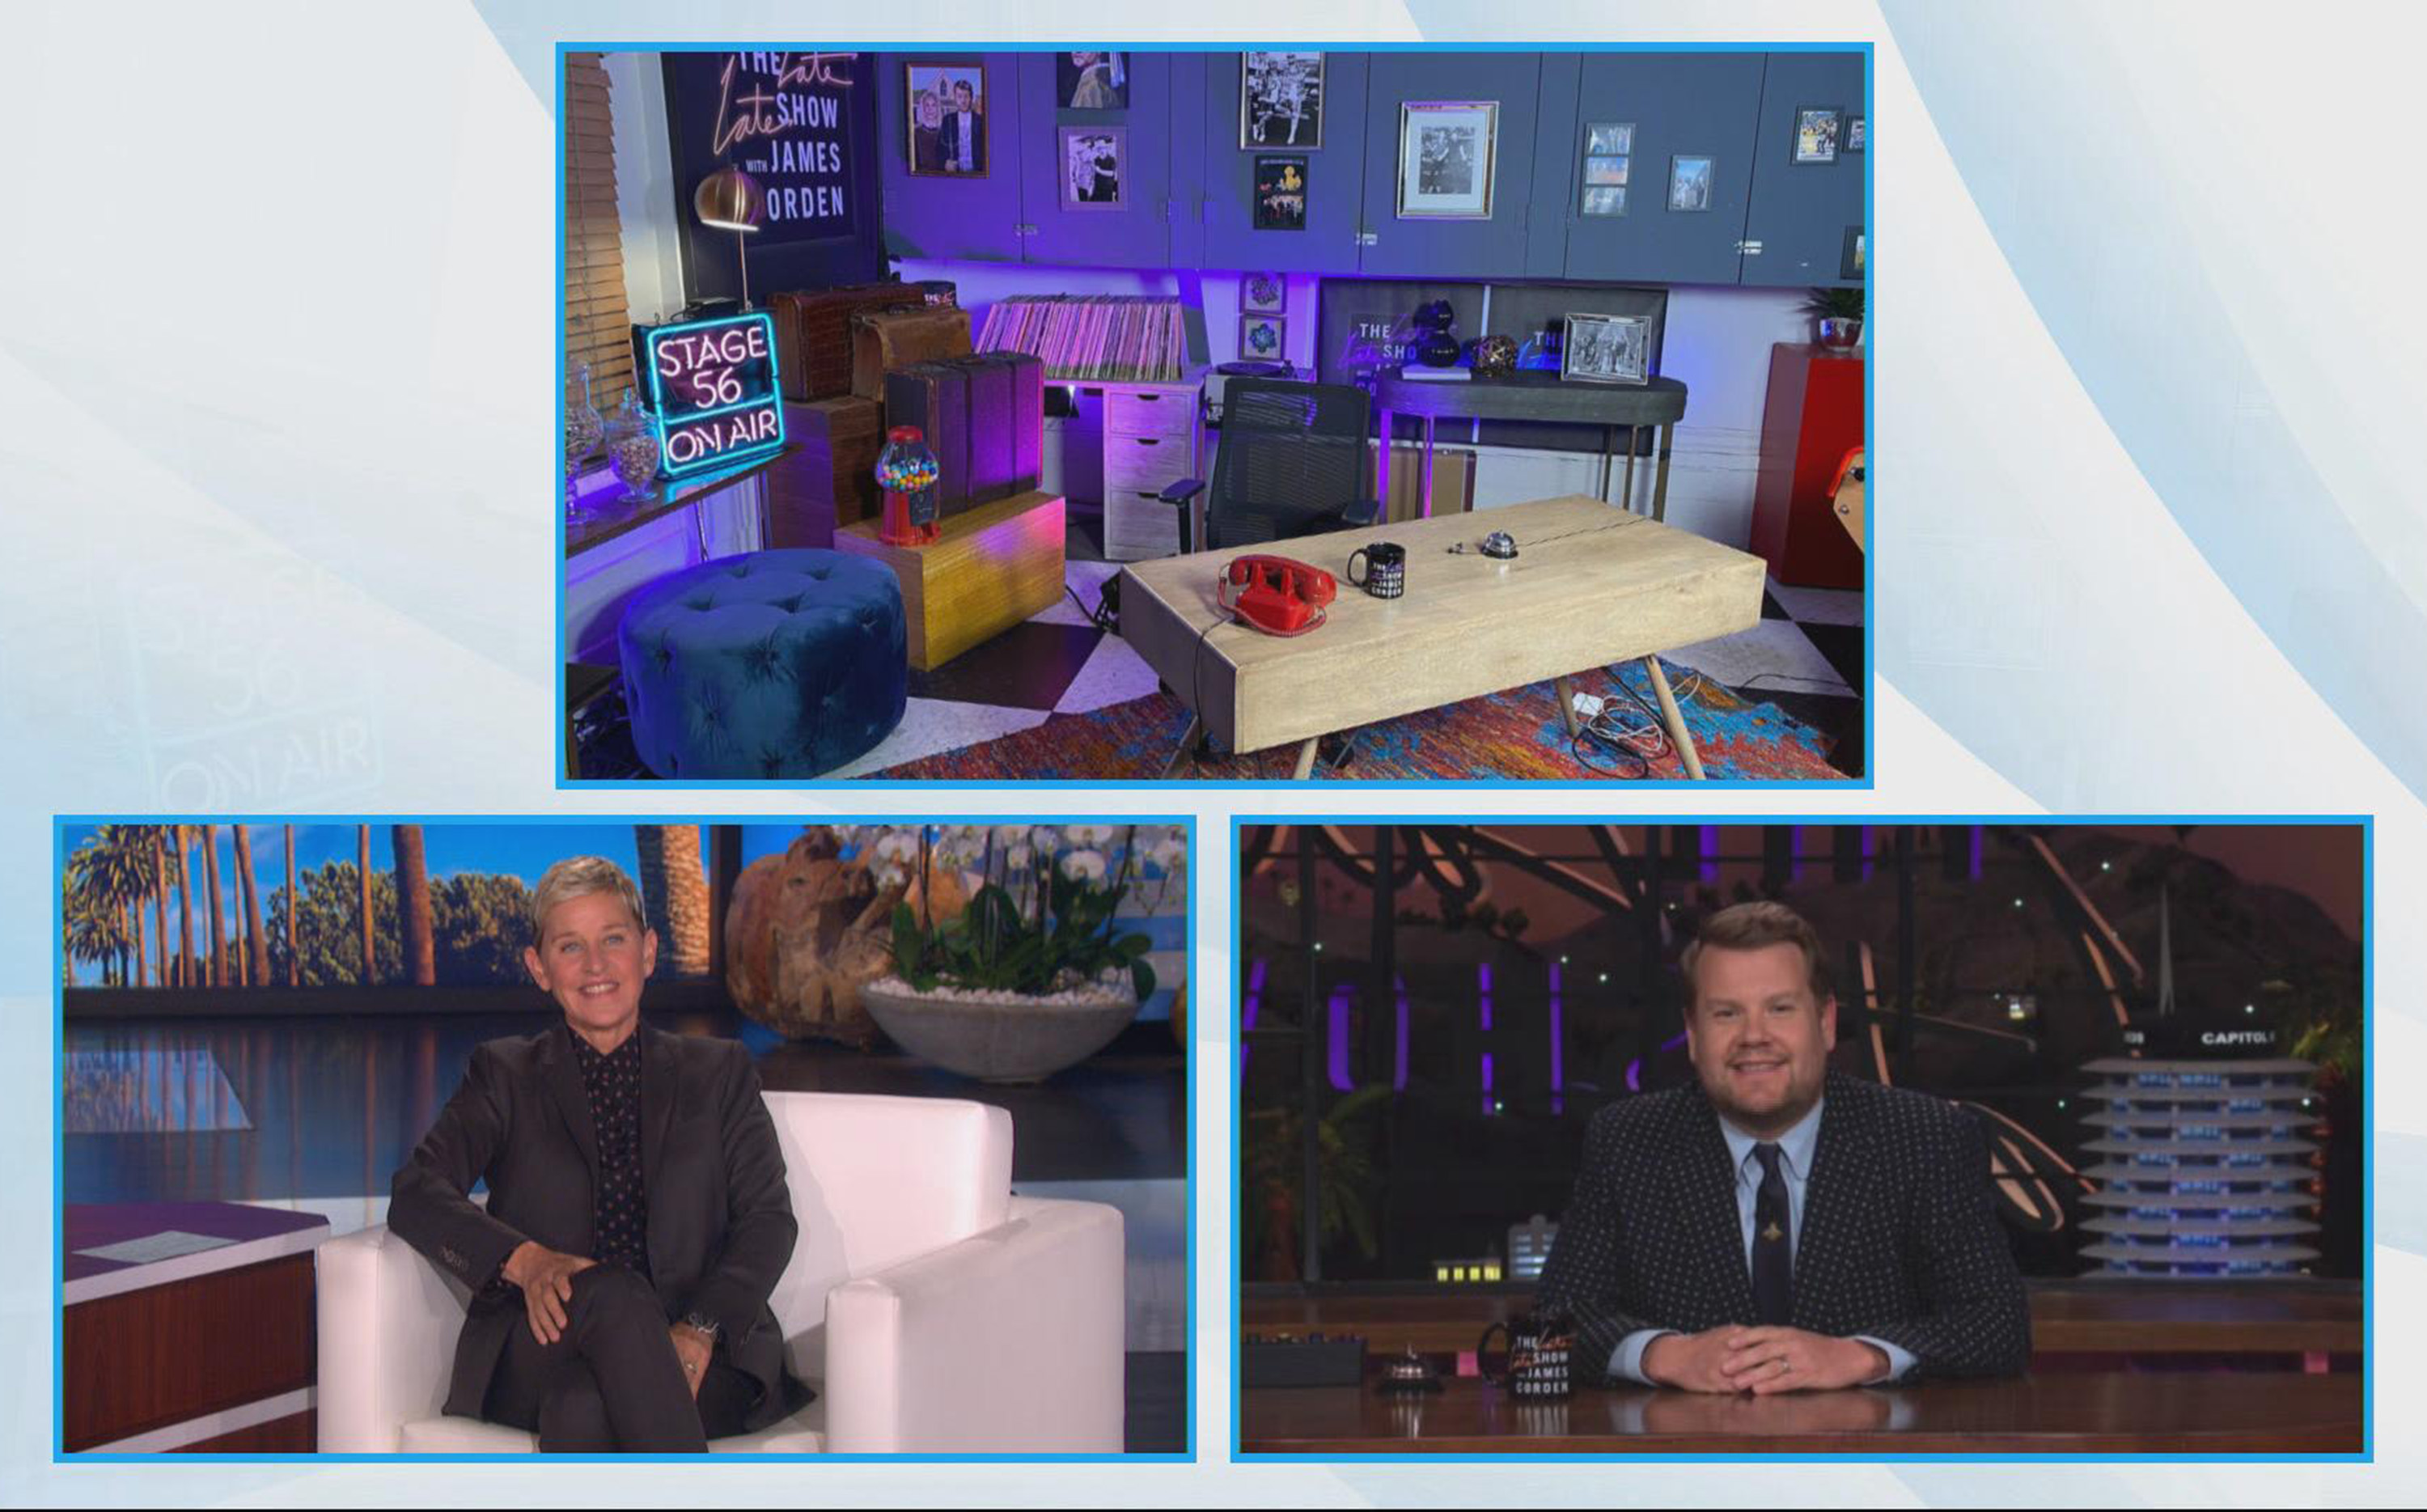 James Corden appeared on The Ellen DeGeneres Show